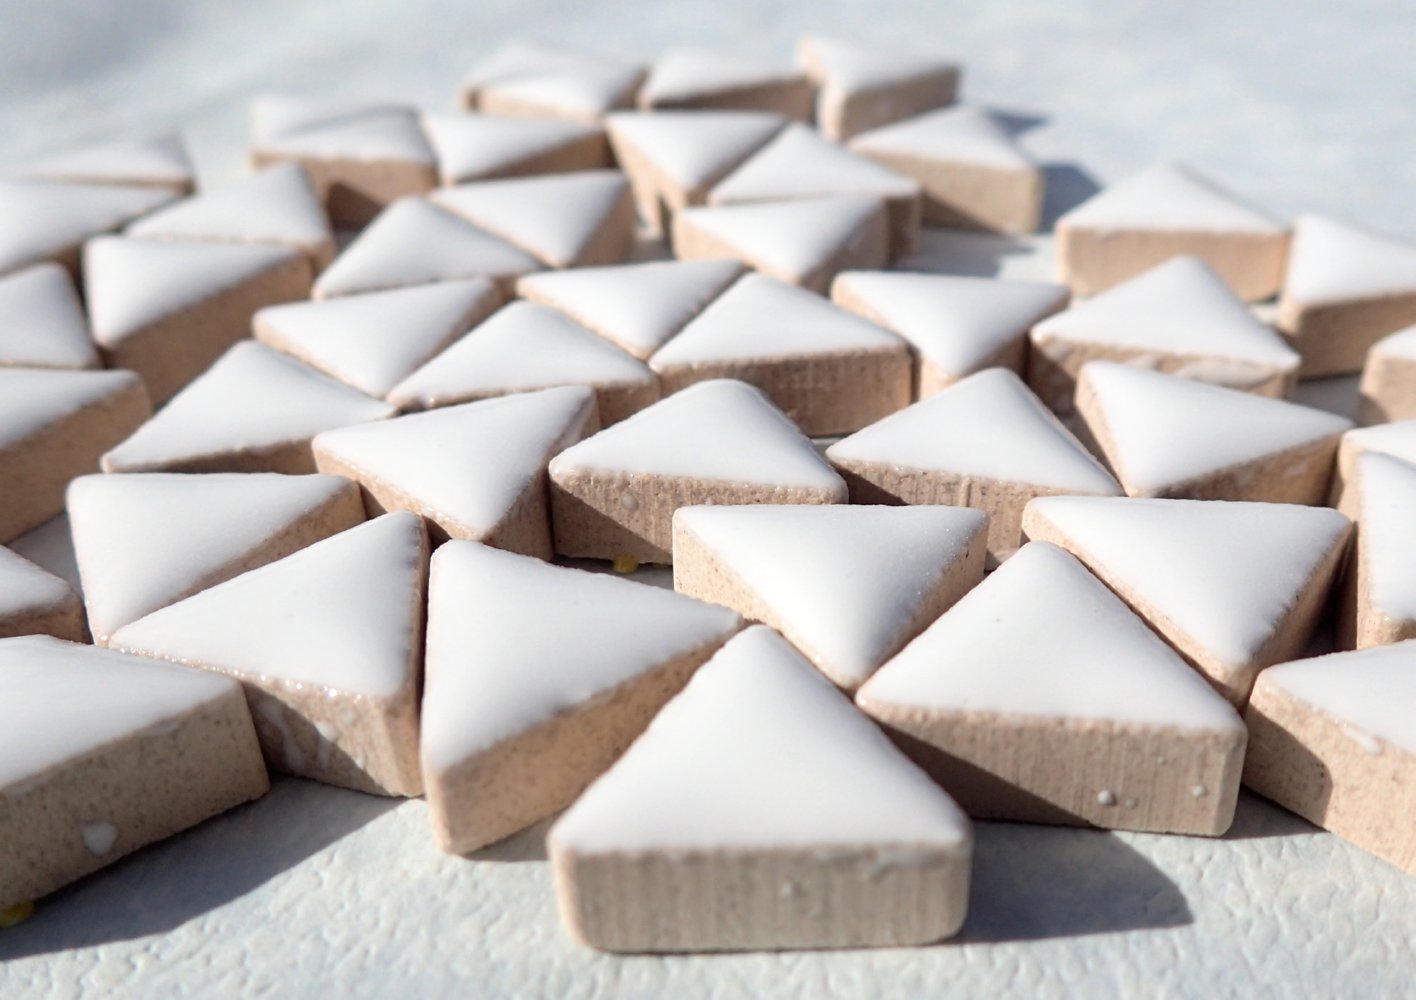 White Mini Triangles Mosaic Tiles - 50g Ceramic - 15mm